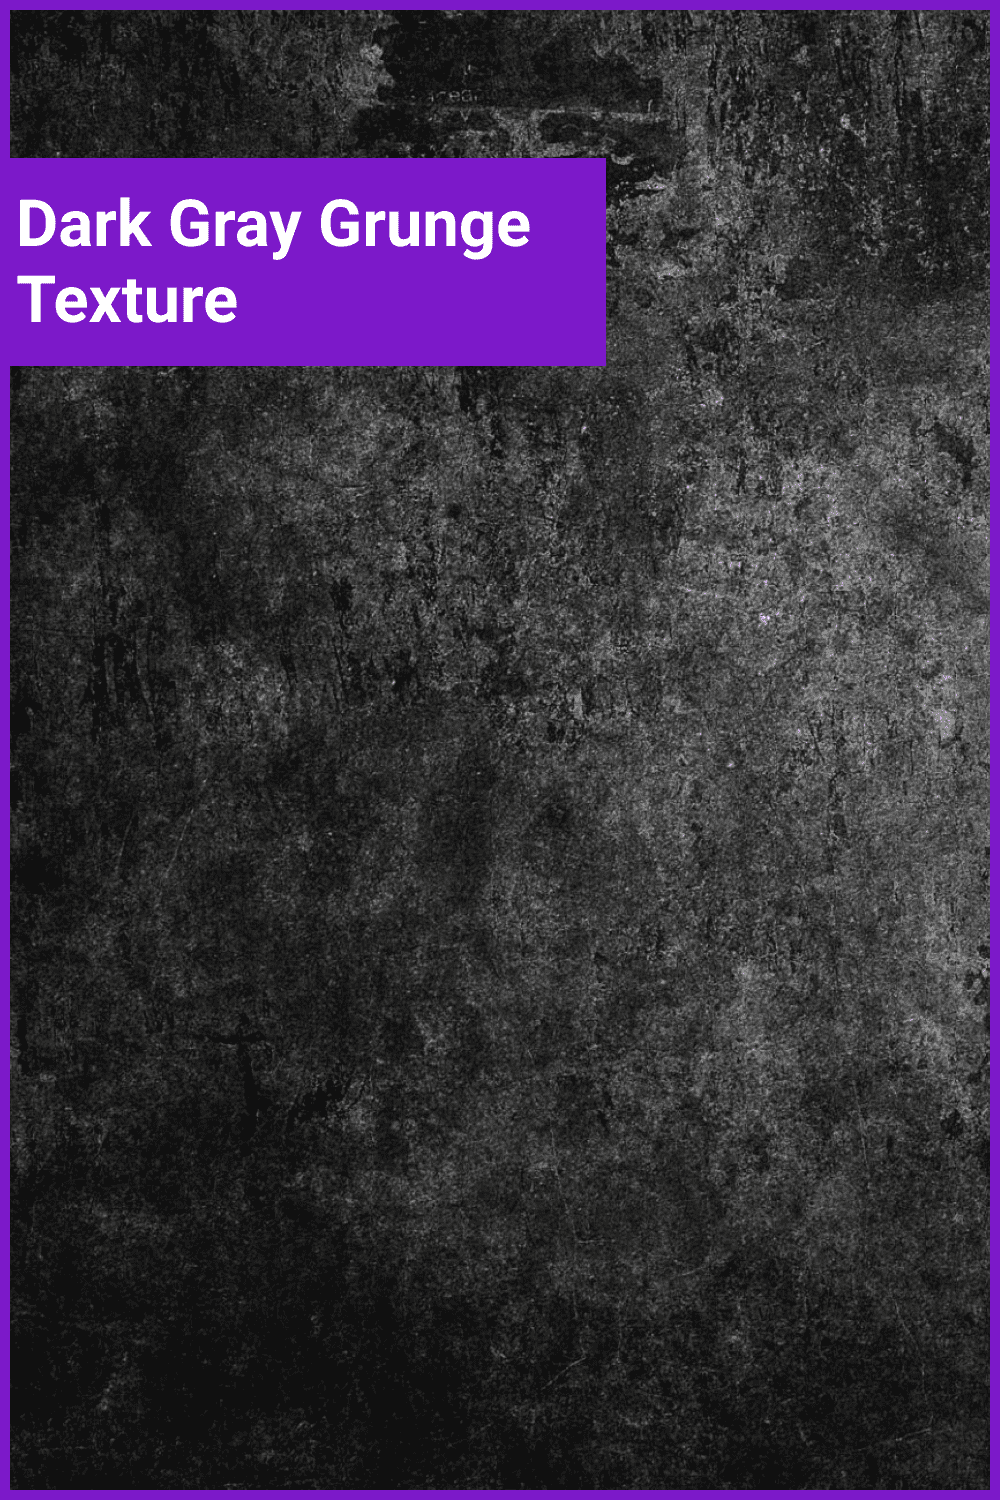 Dark gray grunge texture.